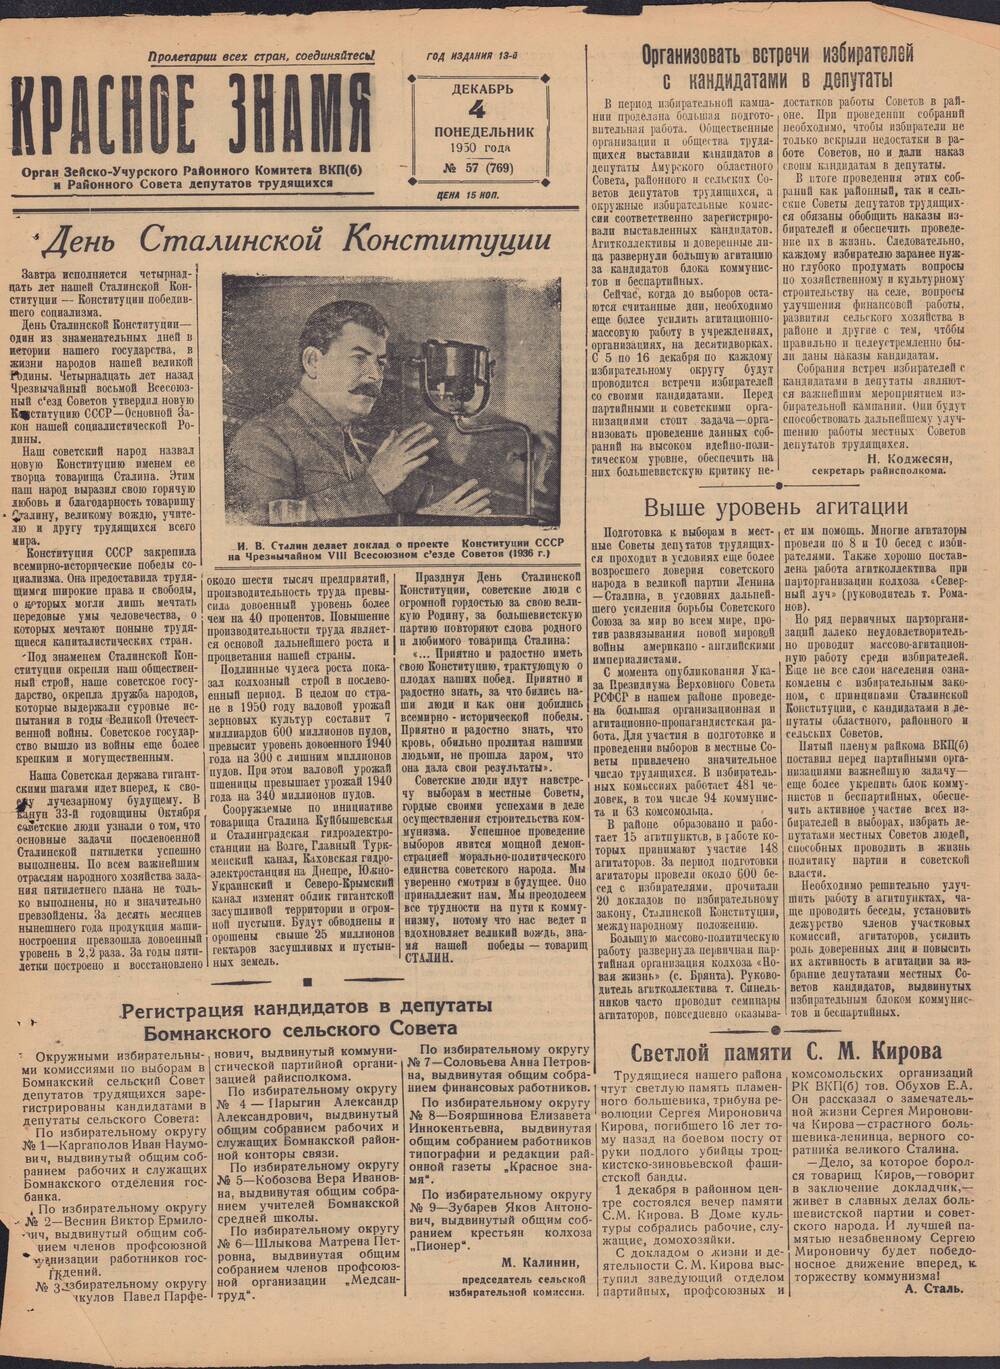 Газета Красное знамя №57 (769) от 4 декабря 1950 года.